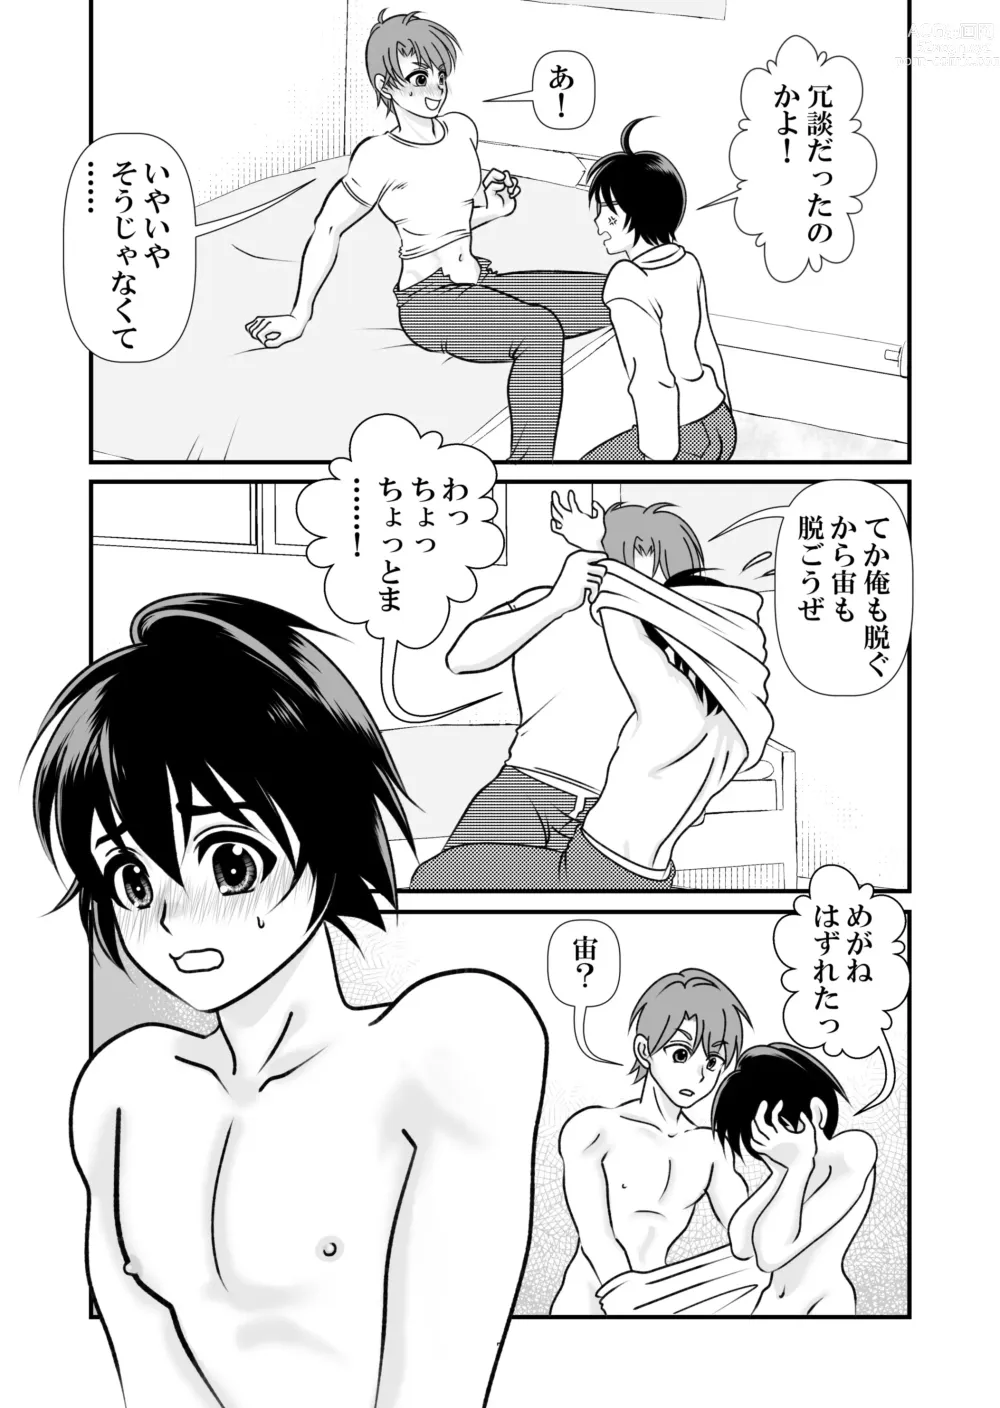 Page 7 of doujinshi Ai no Sorairo 1